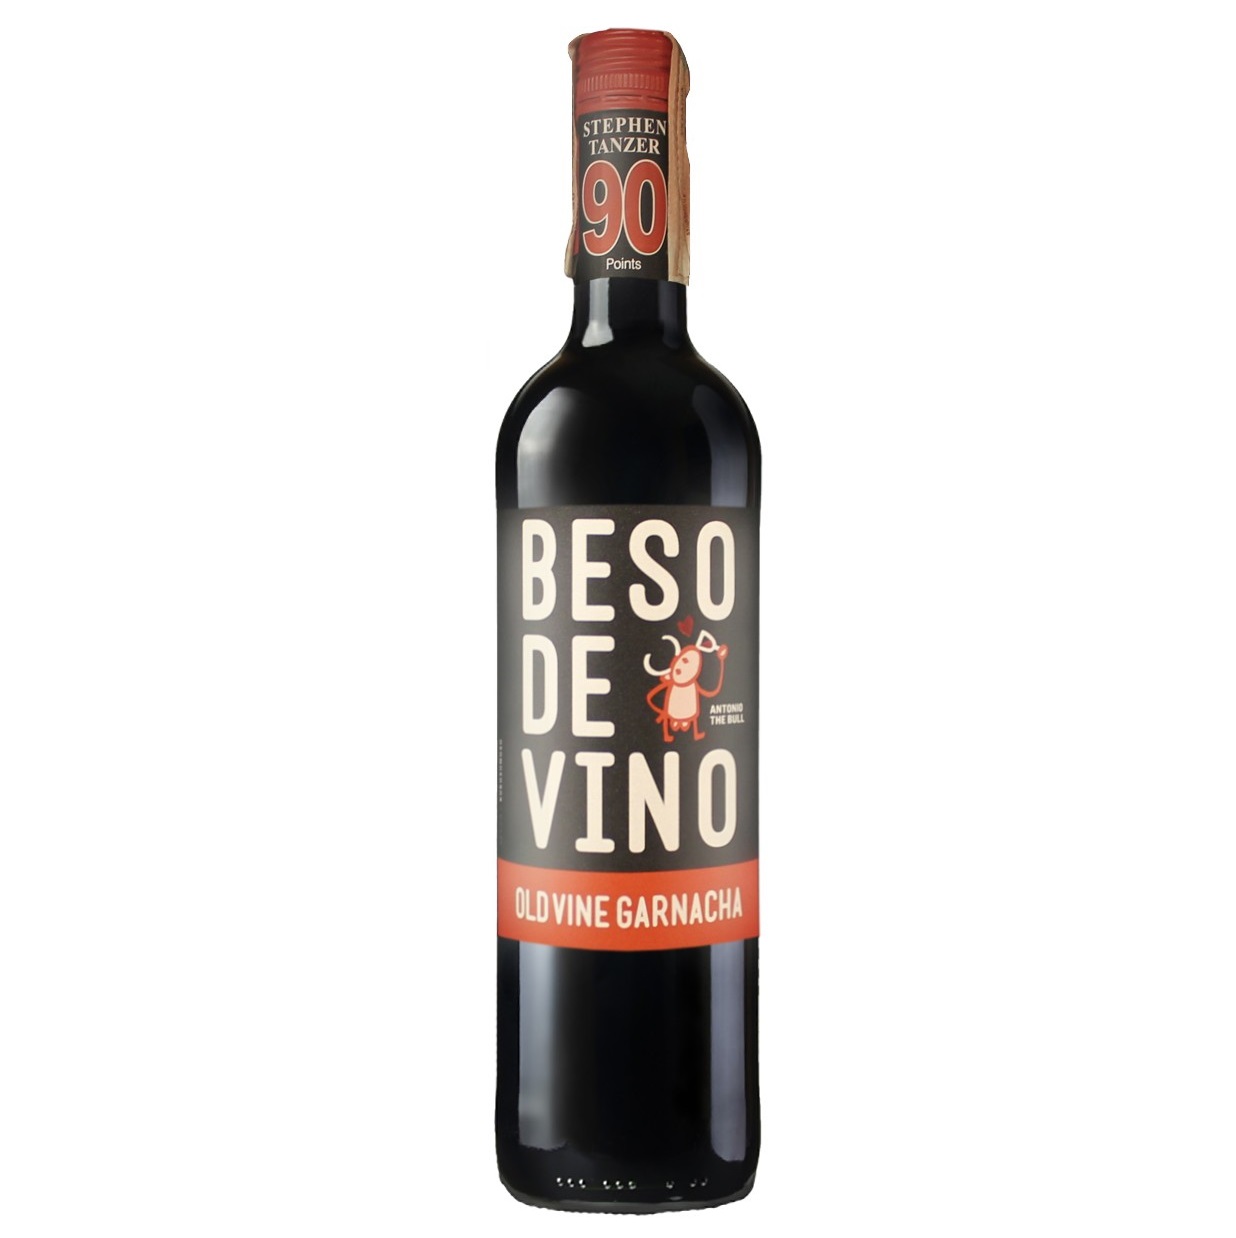 Вино Grandes Vinos y Vinedos Beso de vino Seleccion, красное, сухое, 13,5%, 0,75 л (8000015055359) - фото 1